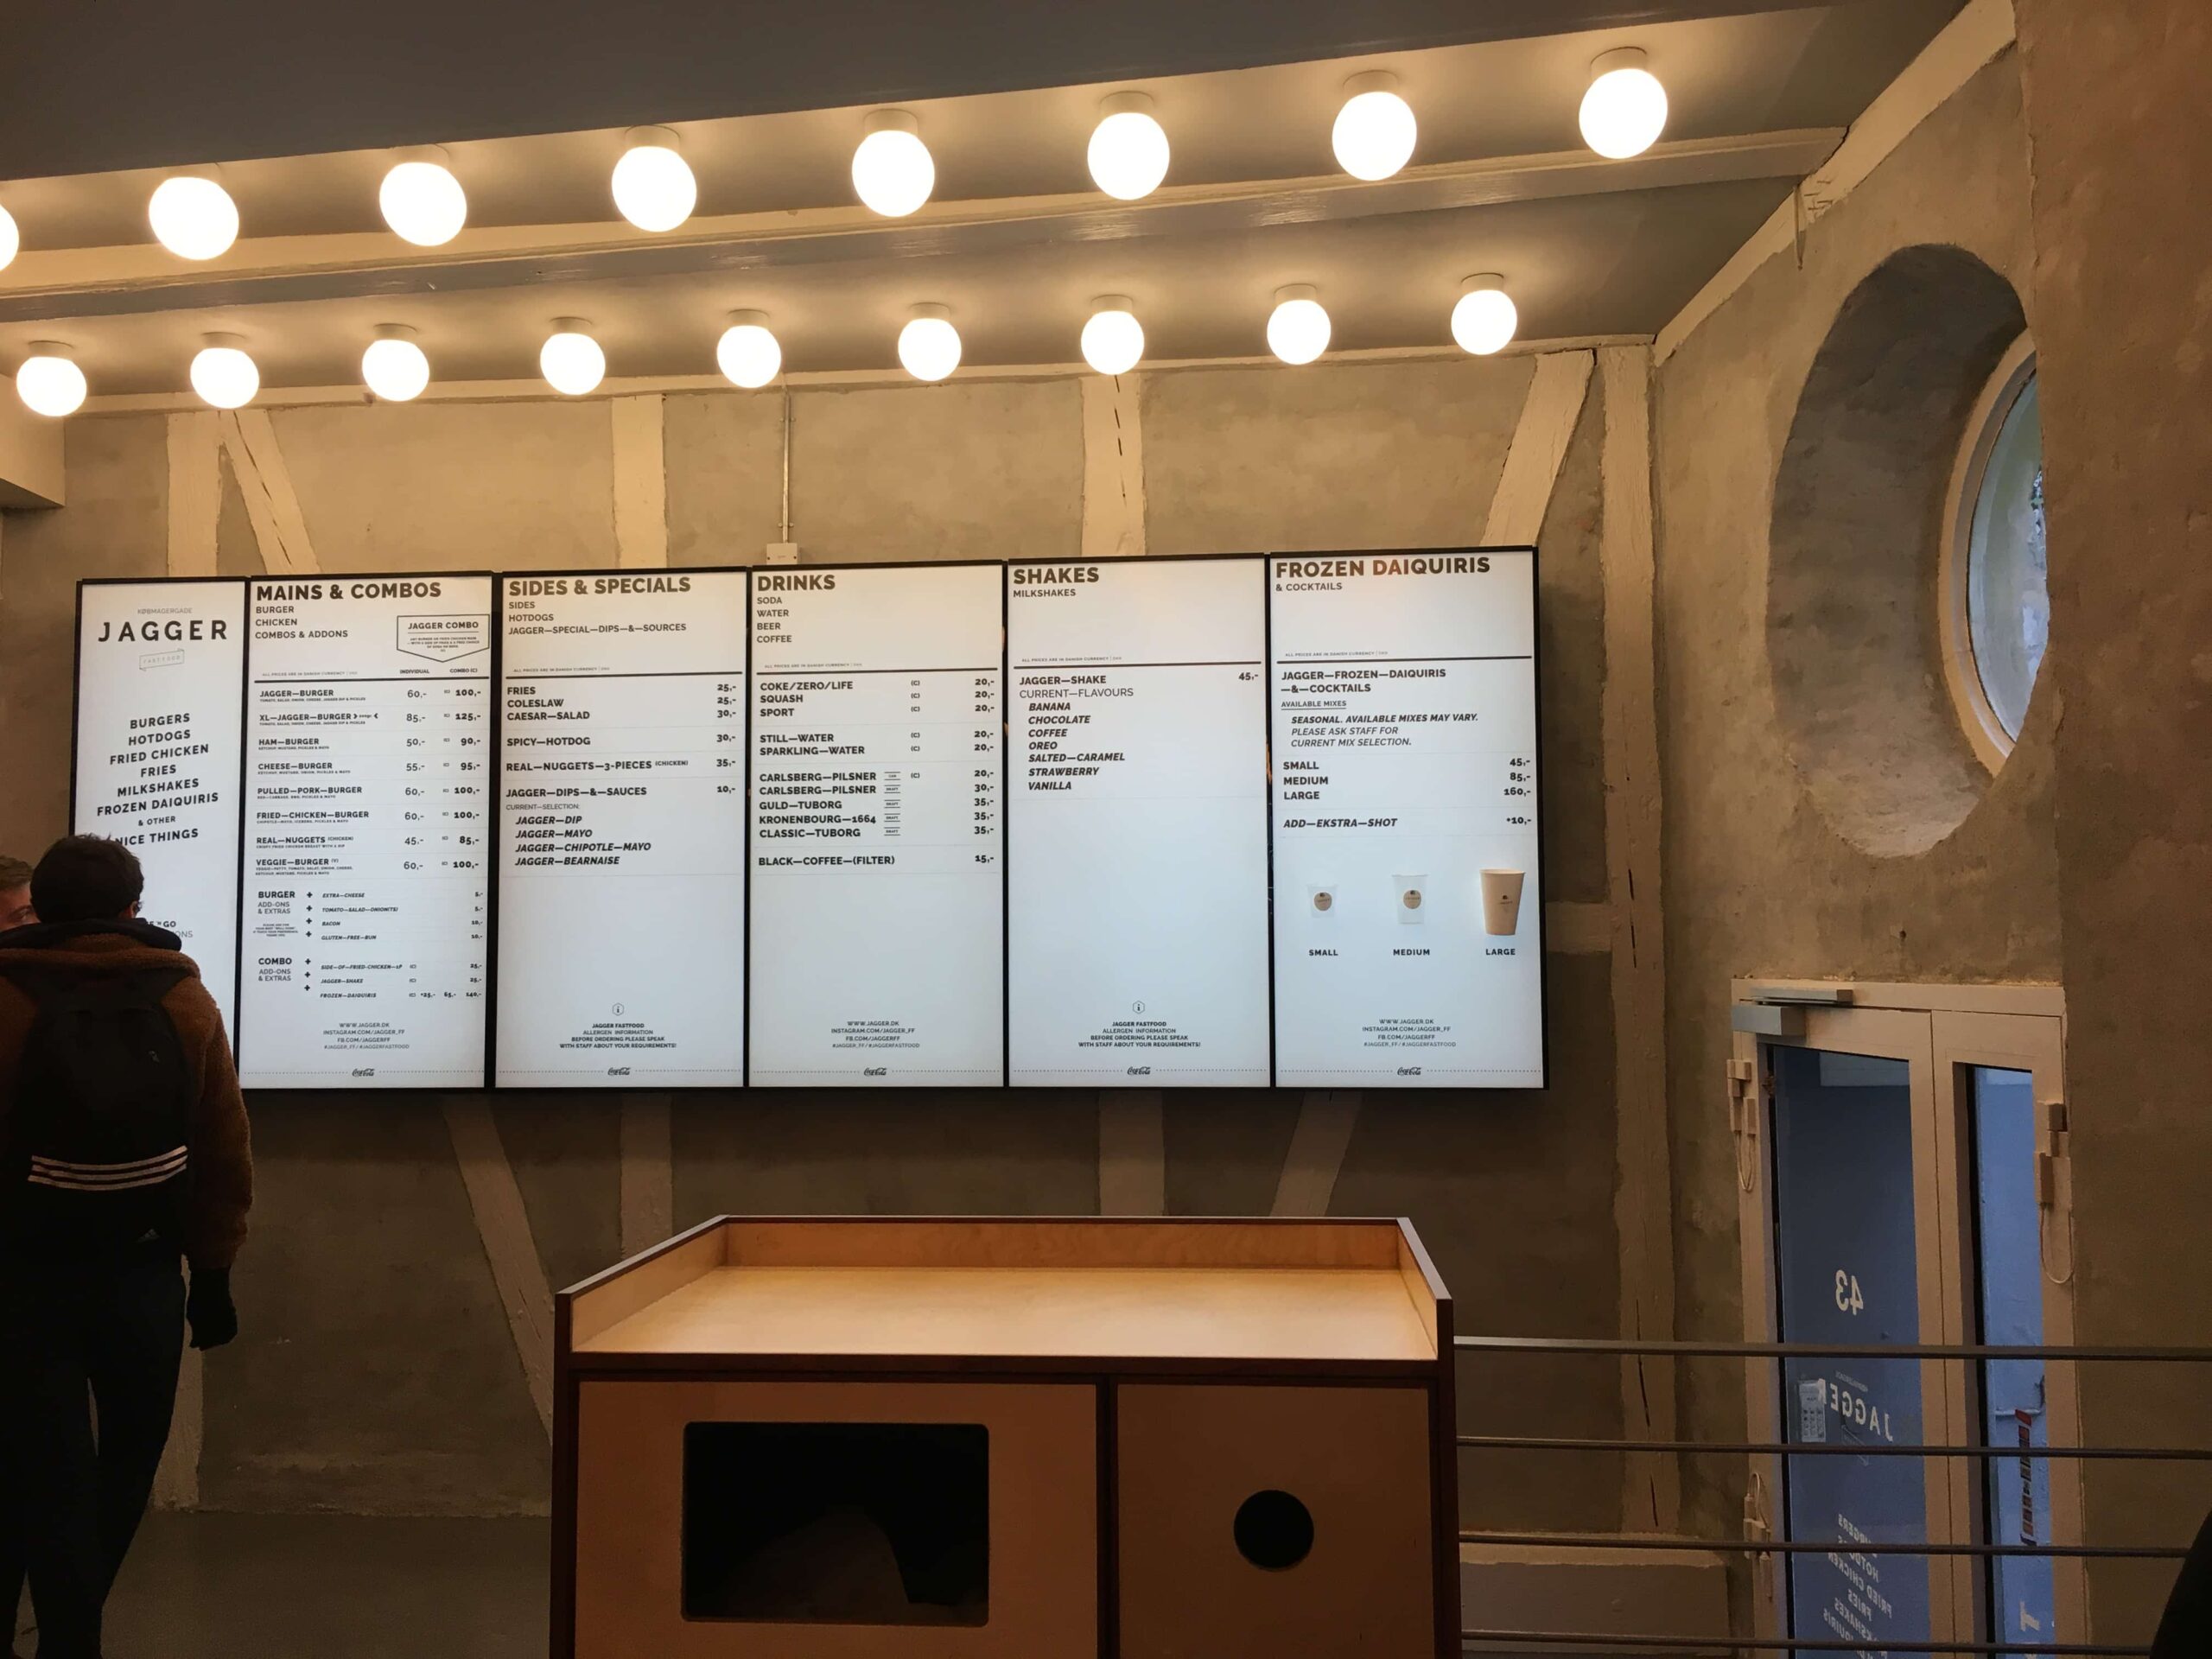 Jagger burger menu in copenhagen city center 2018